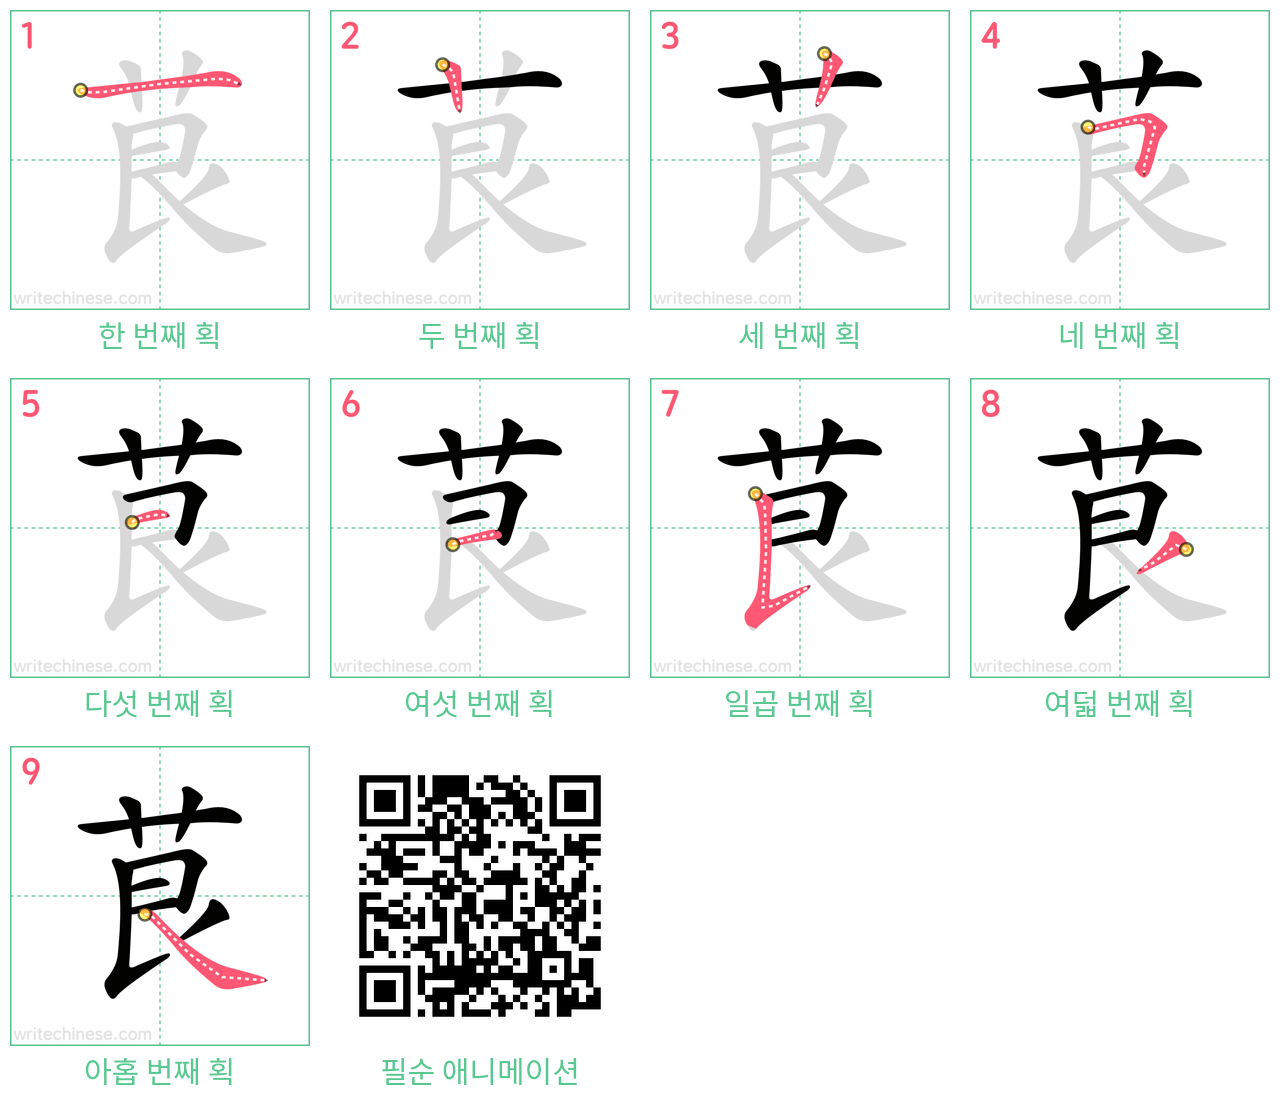 茛 step-by-step stroke order diagrams